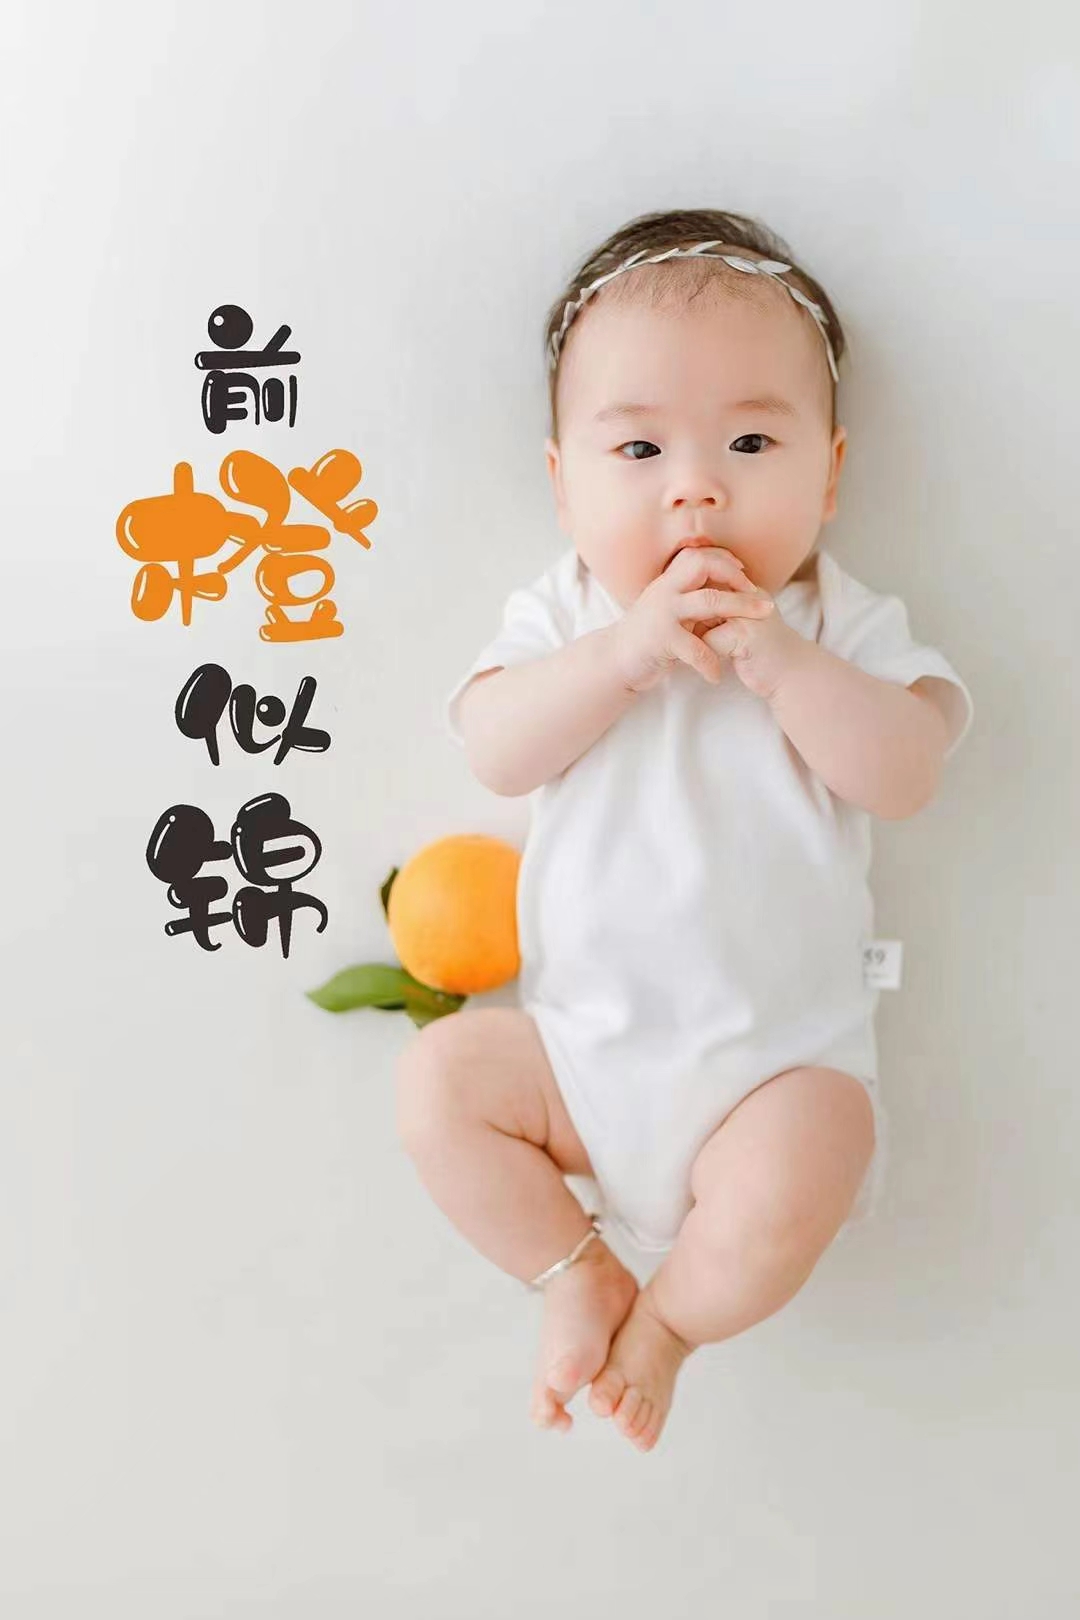 儿童摄影创意橙子谐音主题影楼百天照满月周岁宝宝拍照艺术照服装